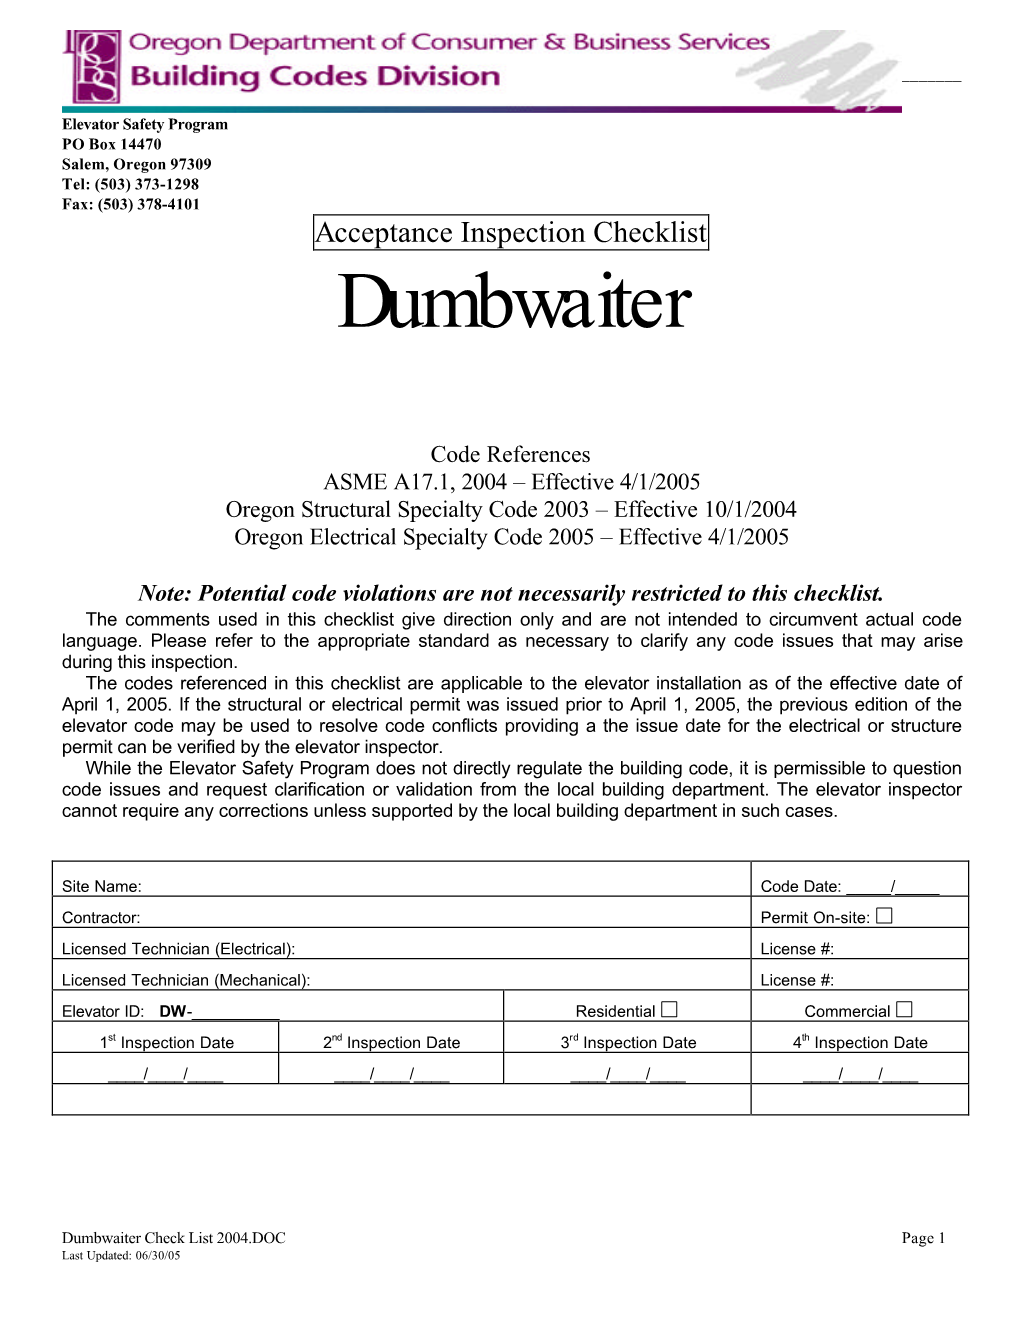 Dumbwaiter Checklist